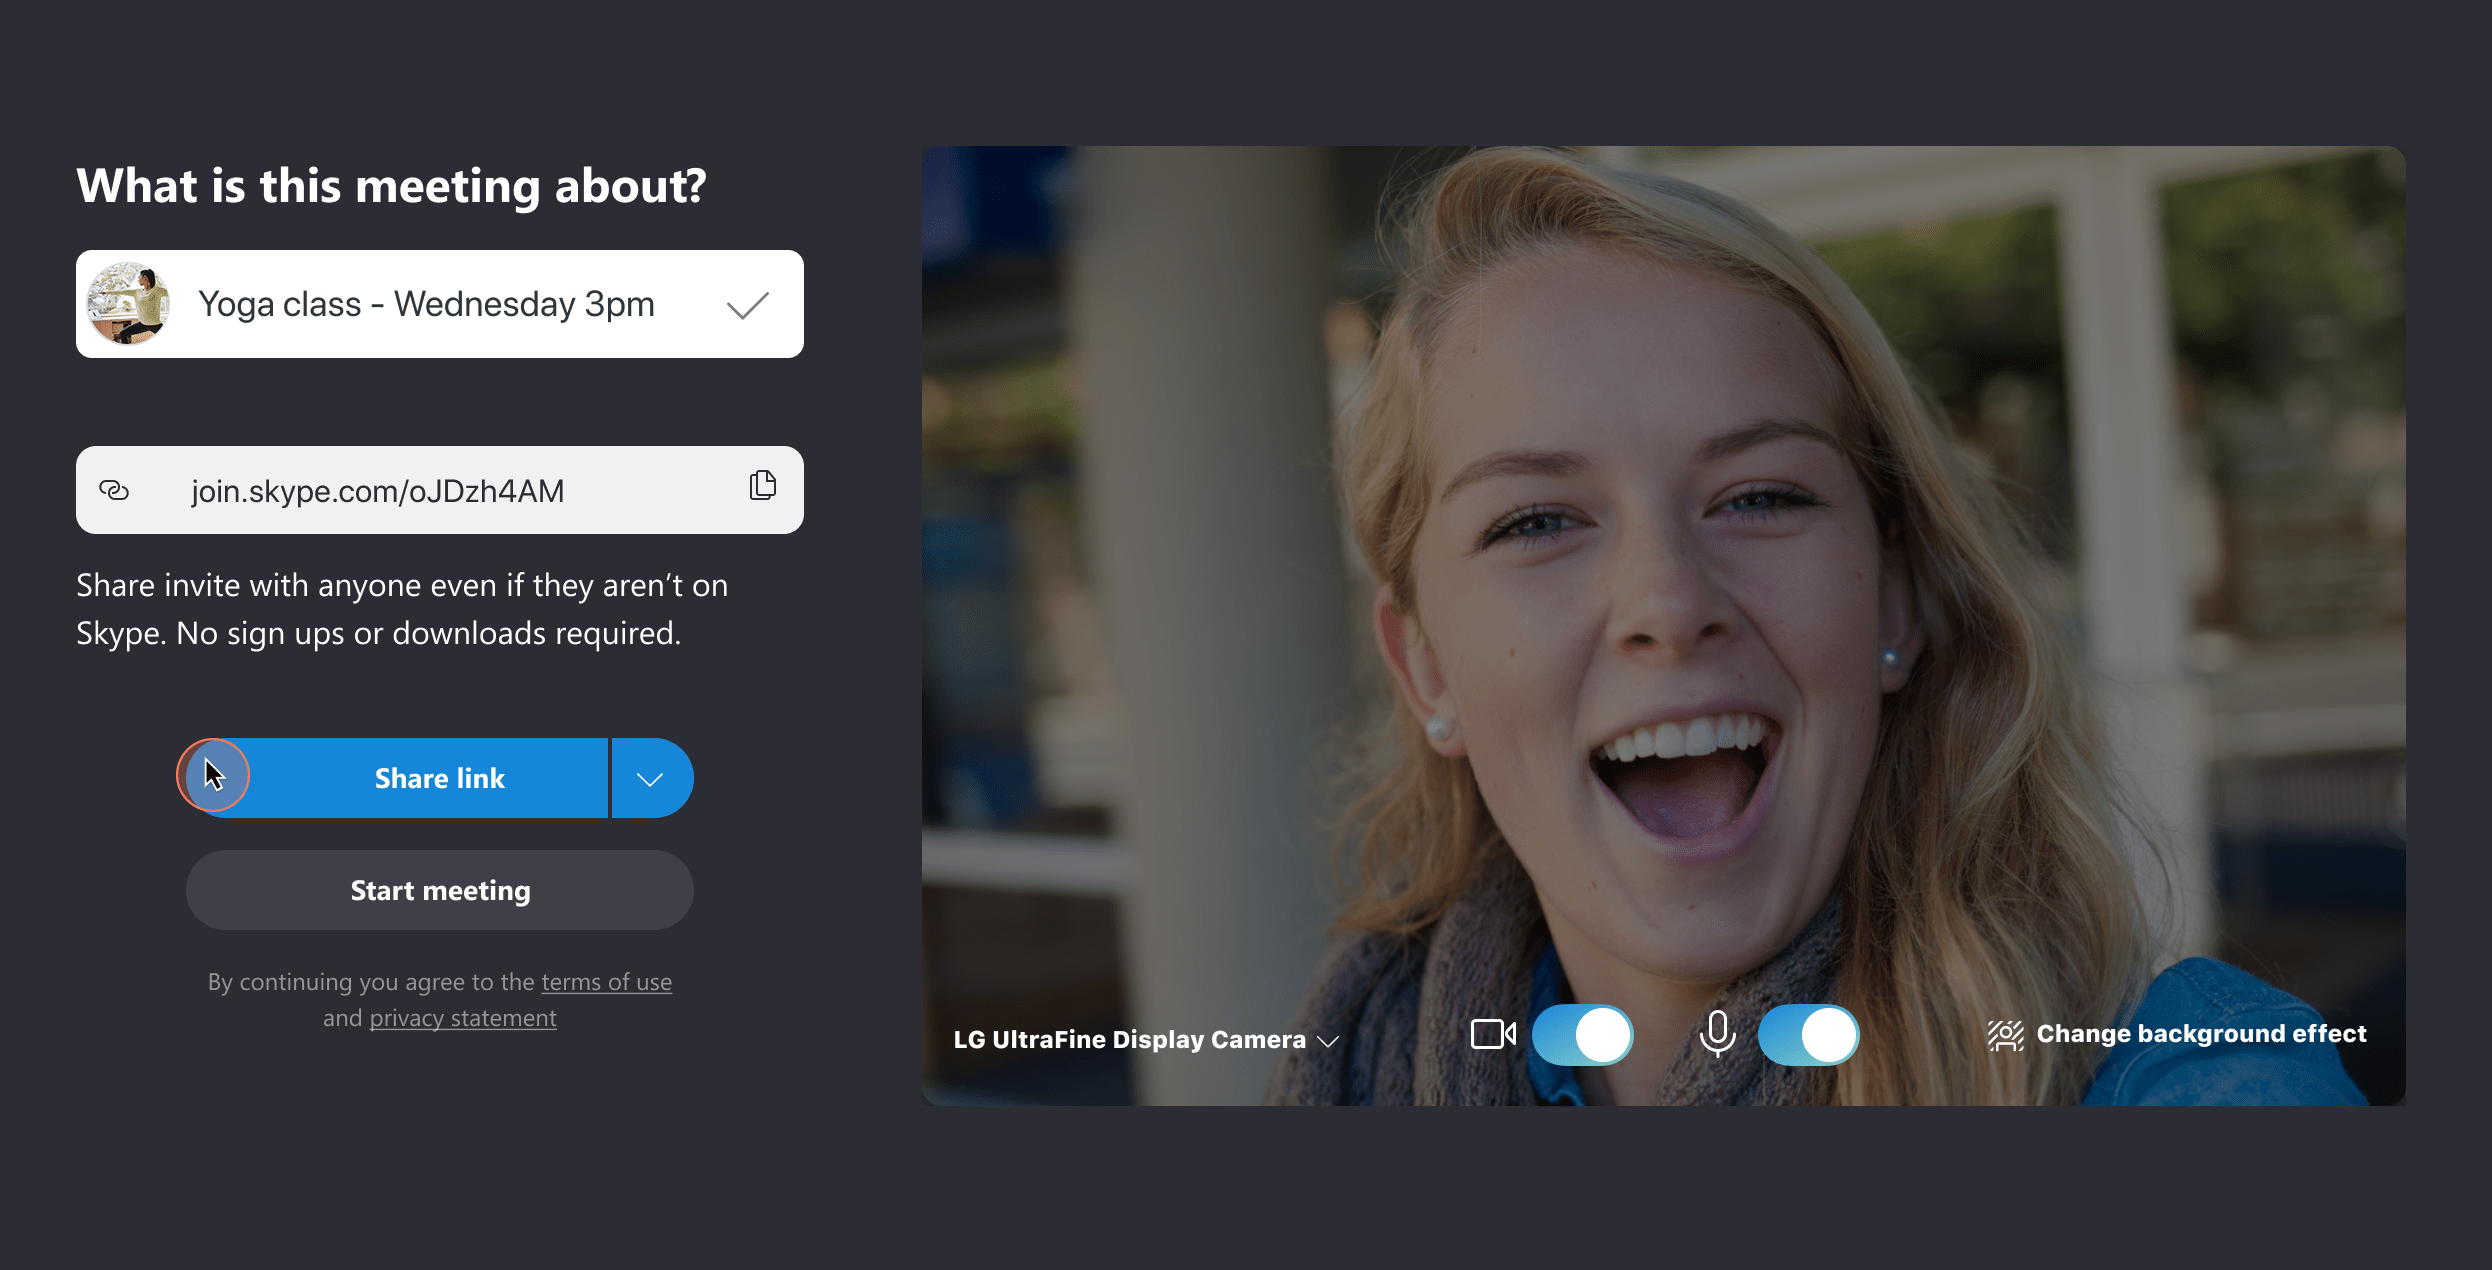 Skype sẽ là một người bạn đồng hành đáng tin cậy trong việc tạo ra một cuộc trò chuyện miễn phí, với nhiều tiện ích hỗ trợ cần thiết. Cùng xem hình ảnh liên quan để biết thêm thông tin về đánh giá, giá cả và các bản trình diễn tốt nhất của Skype. Đừng bỏ lỡ cơ hội truyền tải thông tin nhanh chóng và hiệu quả.